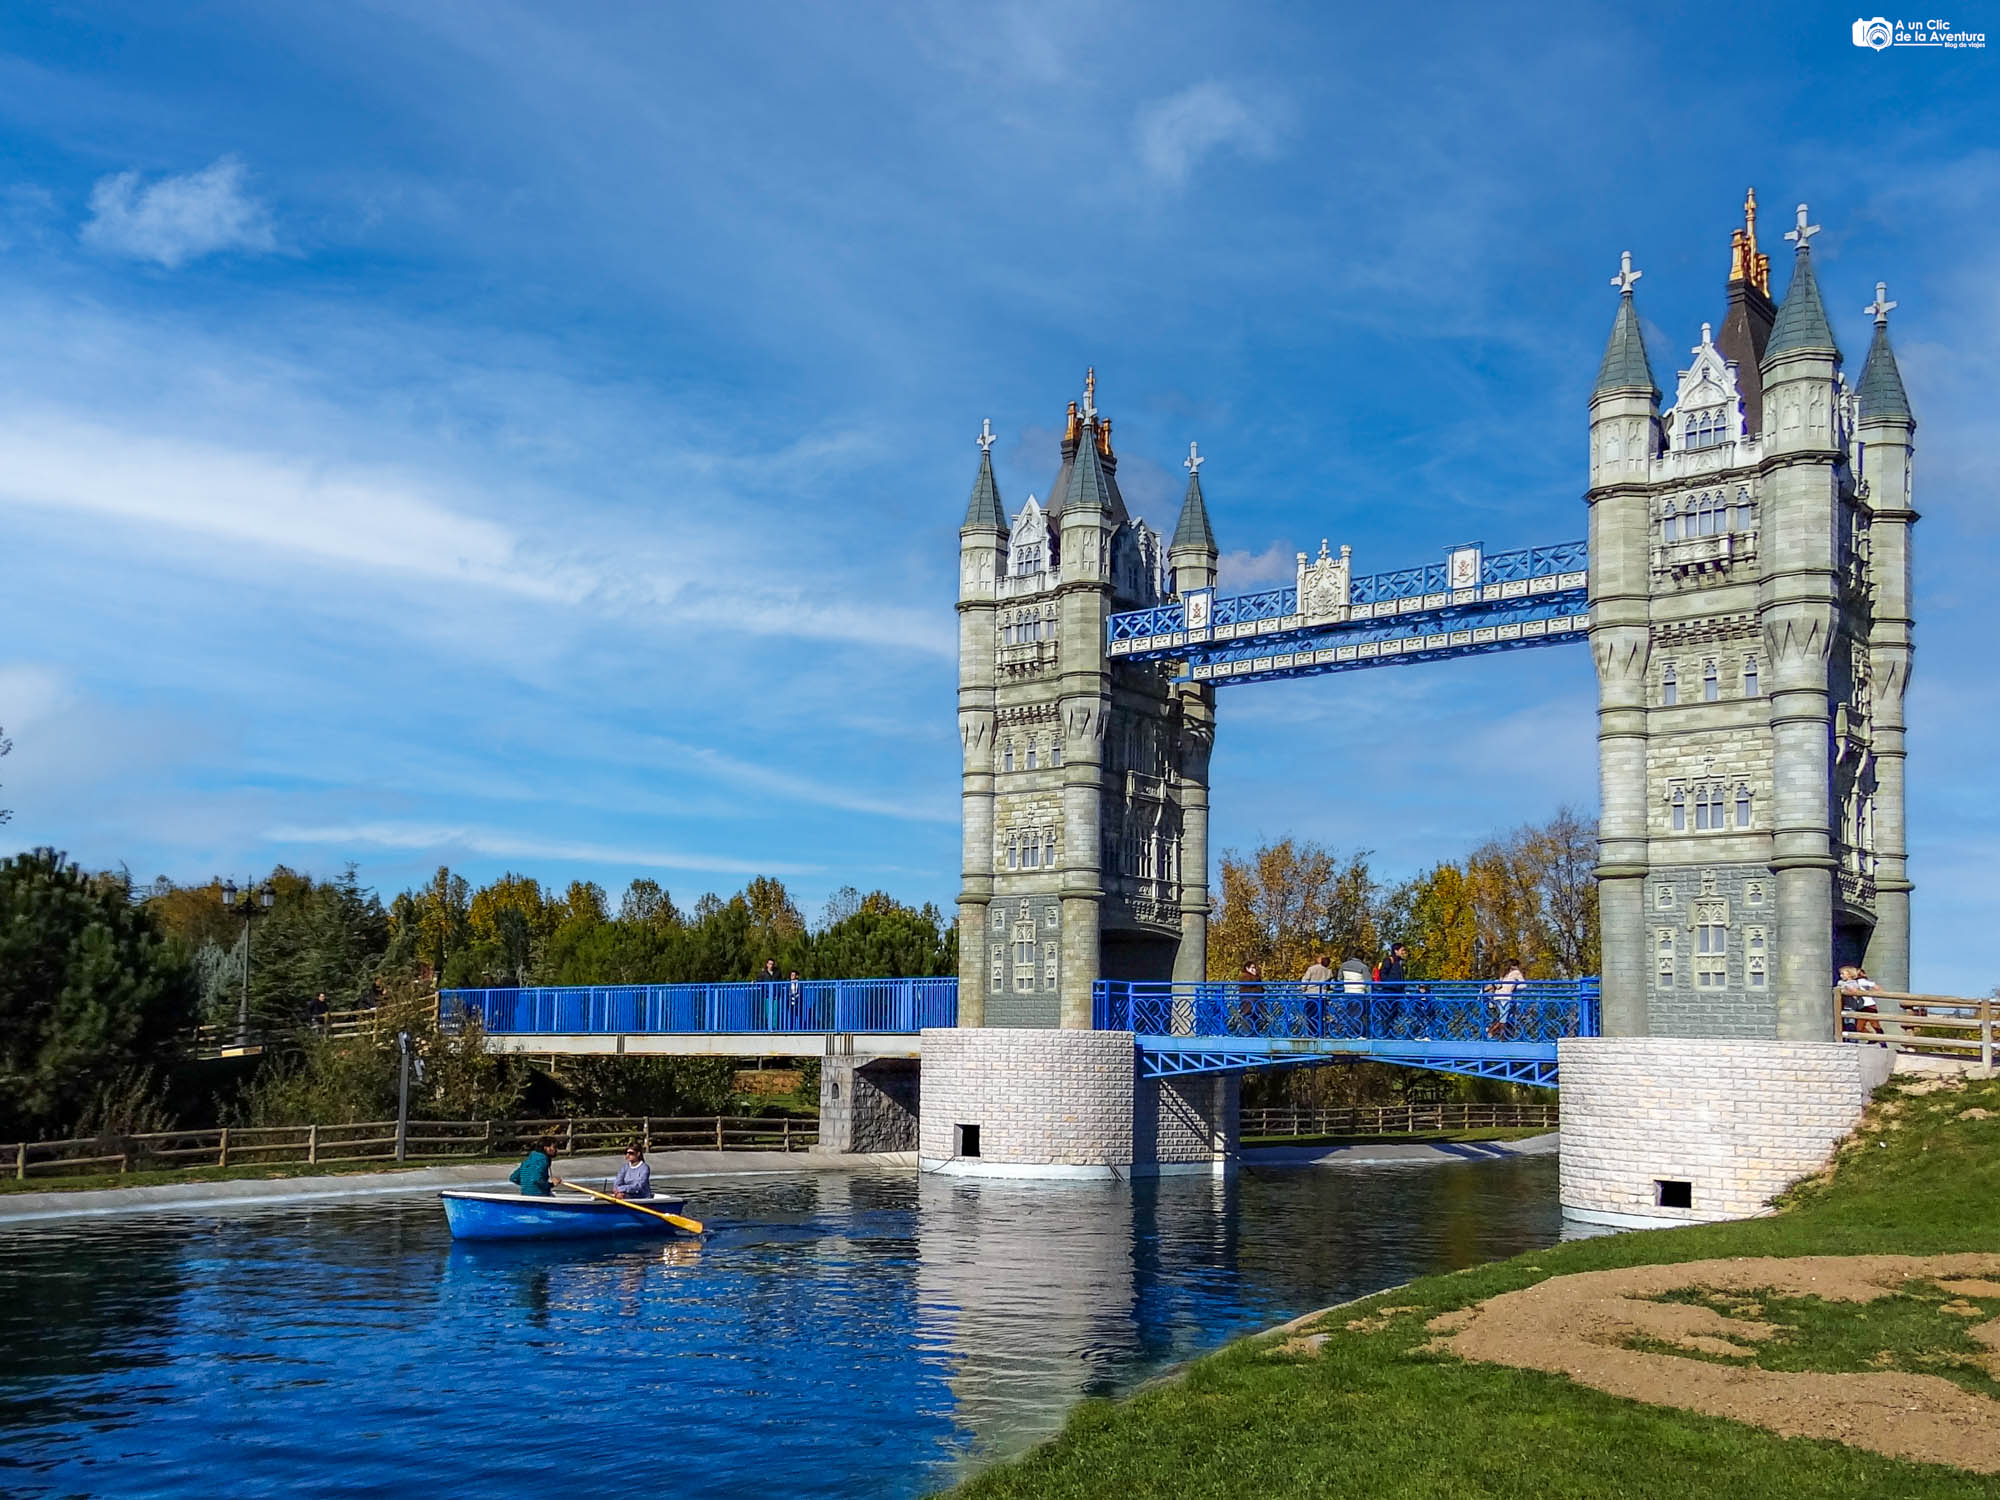 Puente de Londres en el Parque Europa Madrid con niños